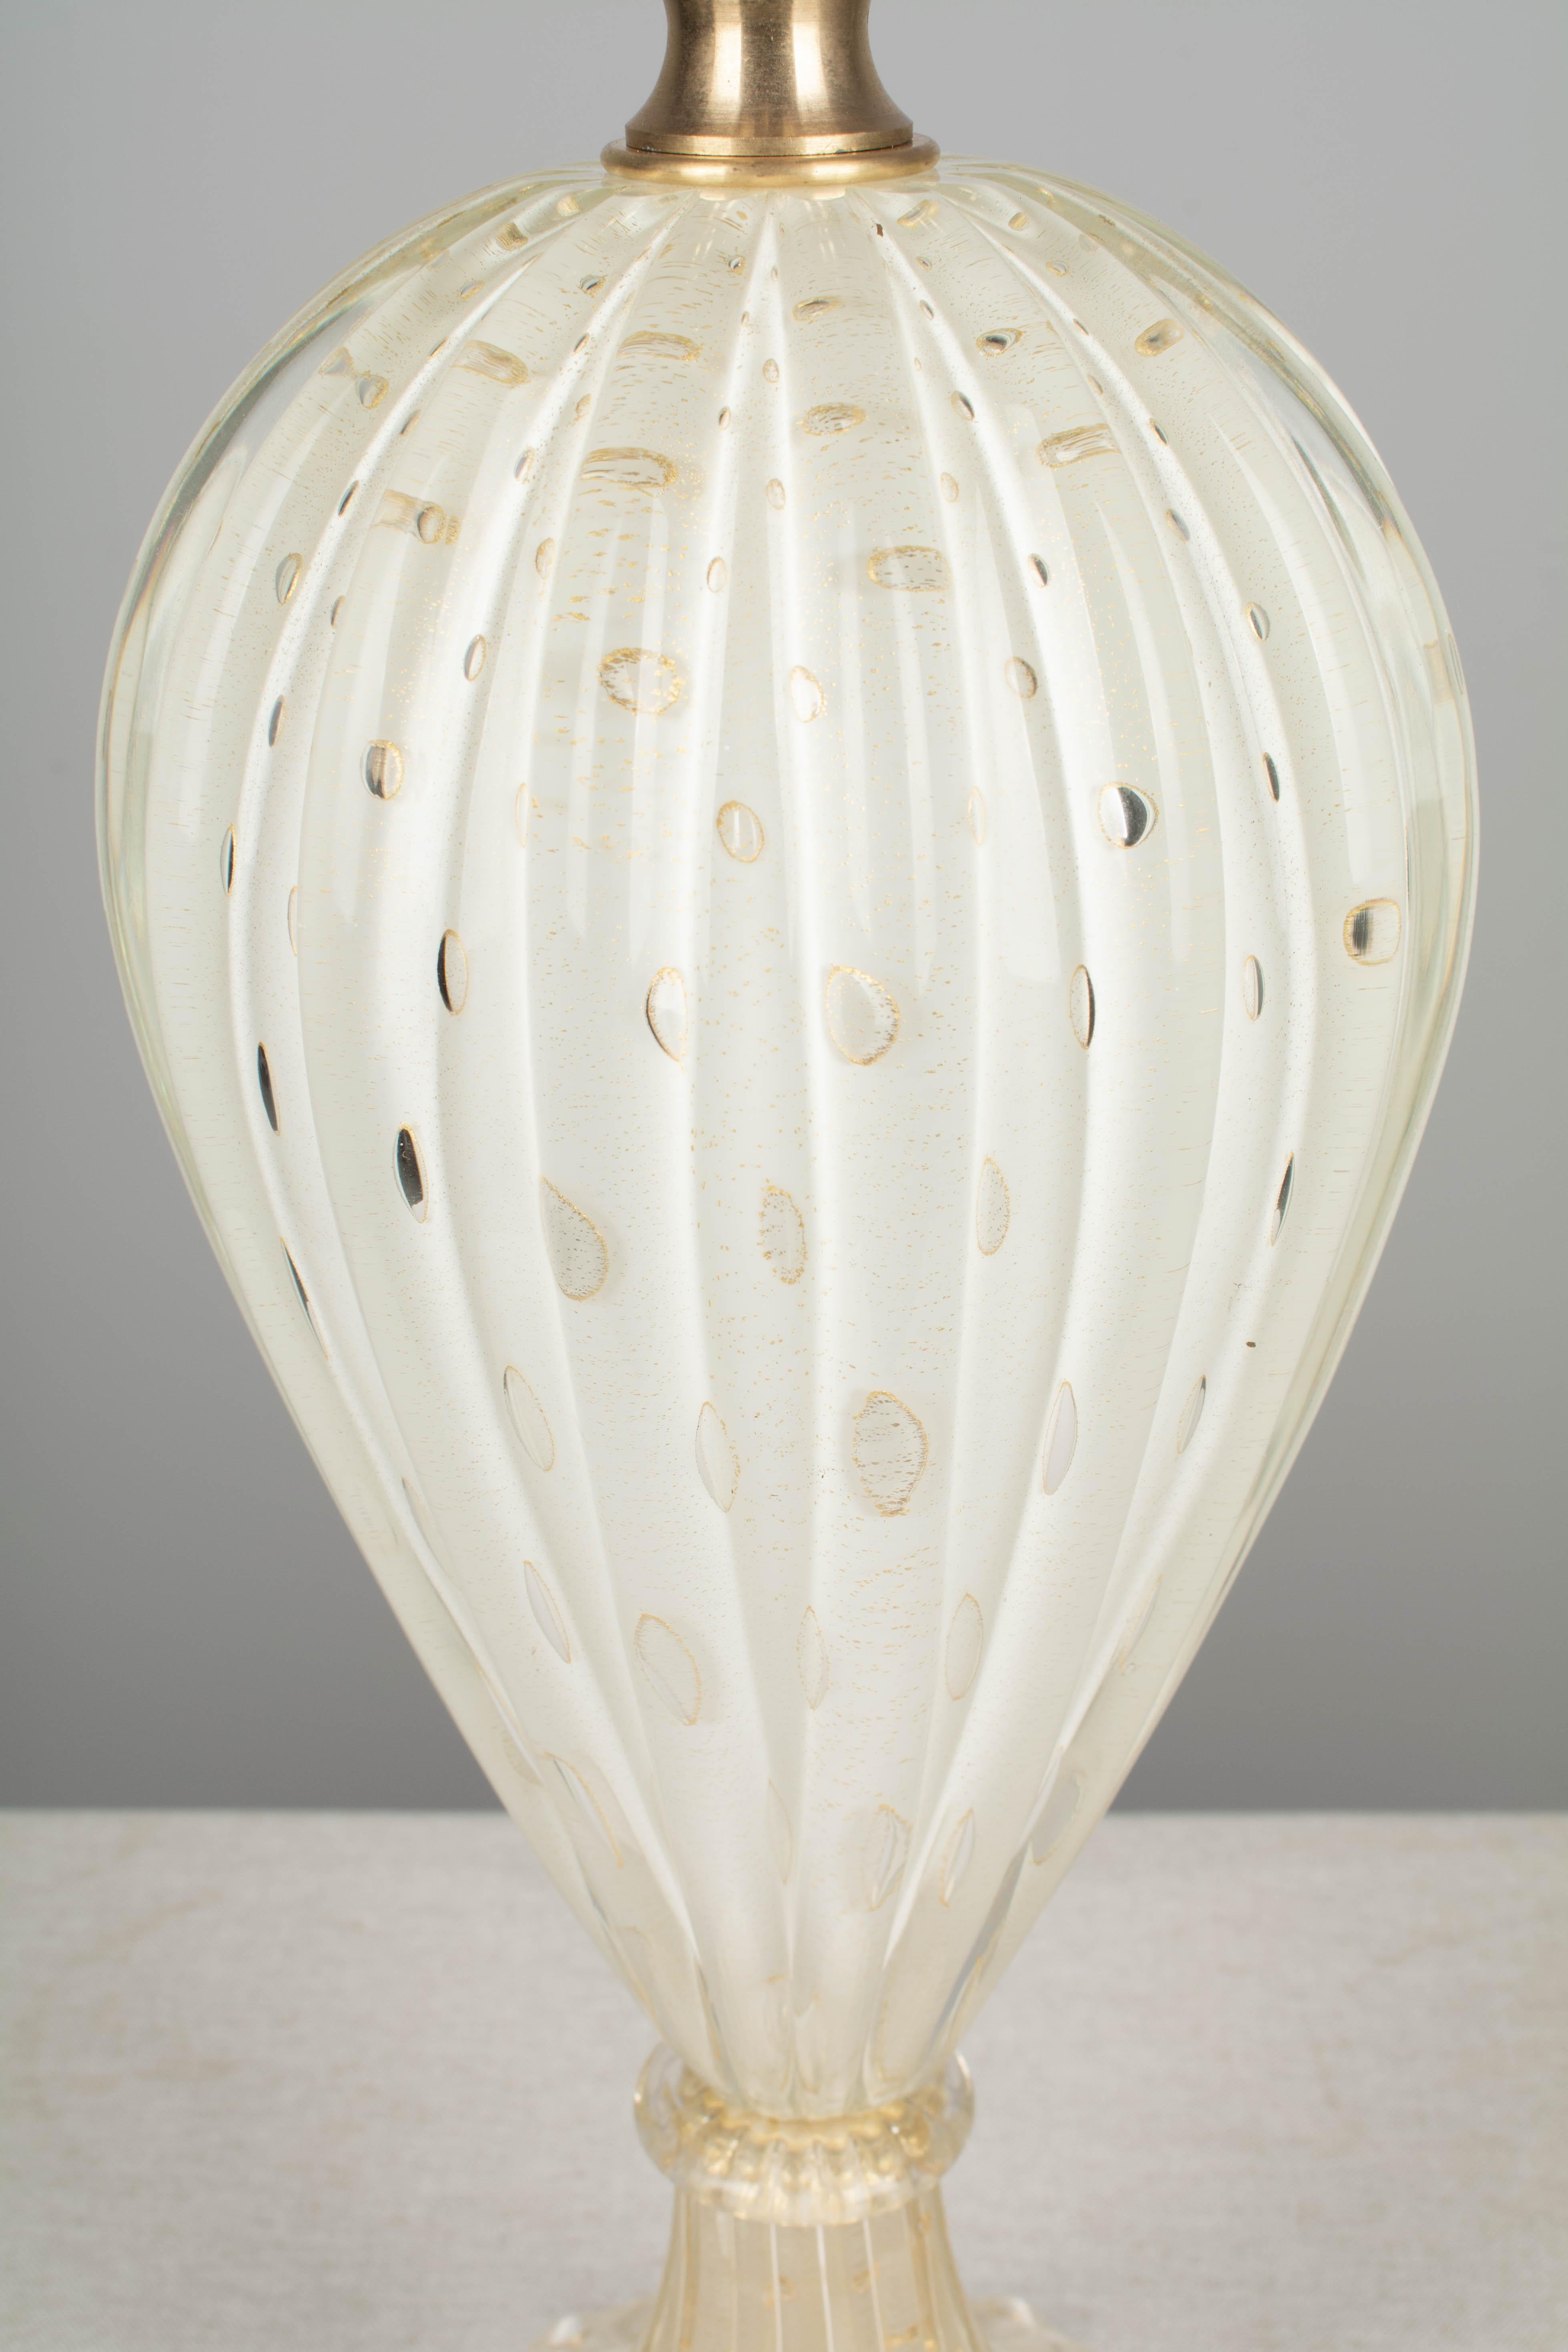 Italian Midcentury Barovier & Toso Murano Glass Lamp